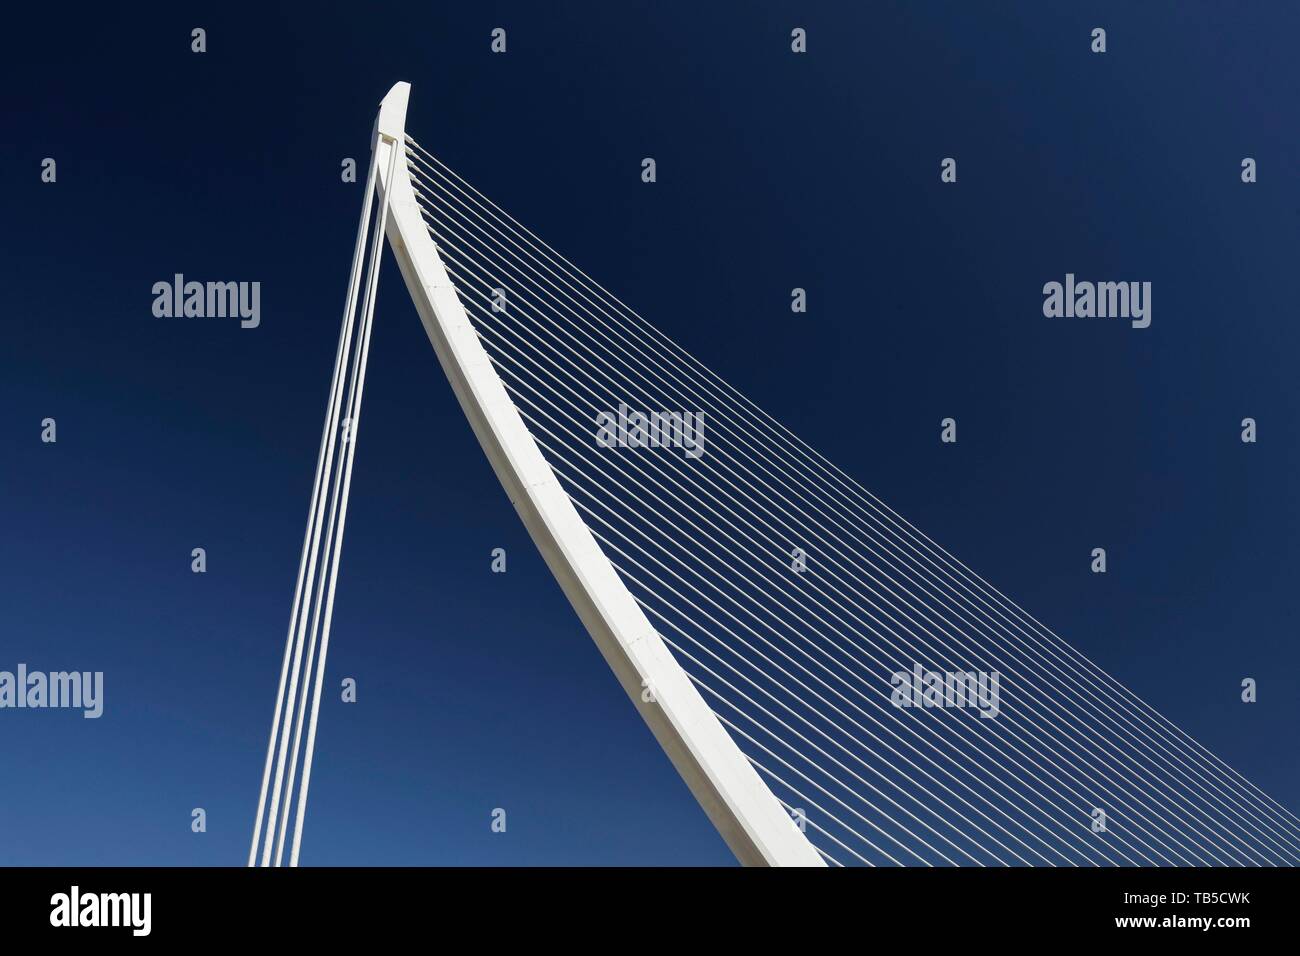 Harfenförmige Schrägseilbrücke, Pont de L'Assut de l' oder der Architekt Santiago Calatrava, CAC, Ciutat de les Arts i les Ciencies, Valencia, Spanien Stockfoto